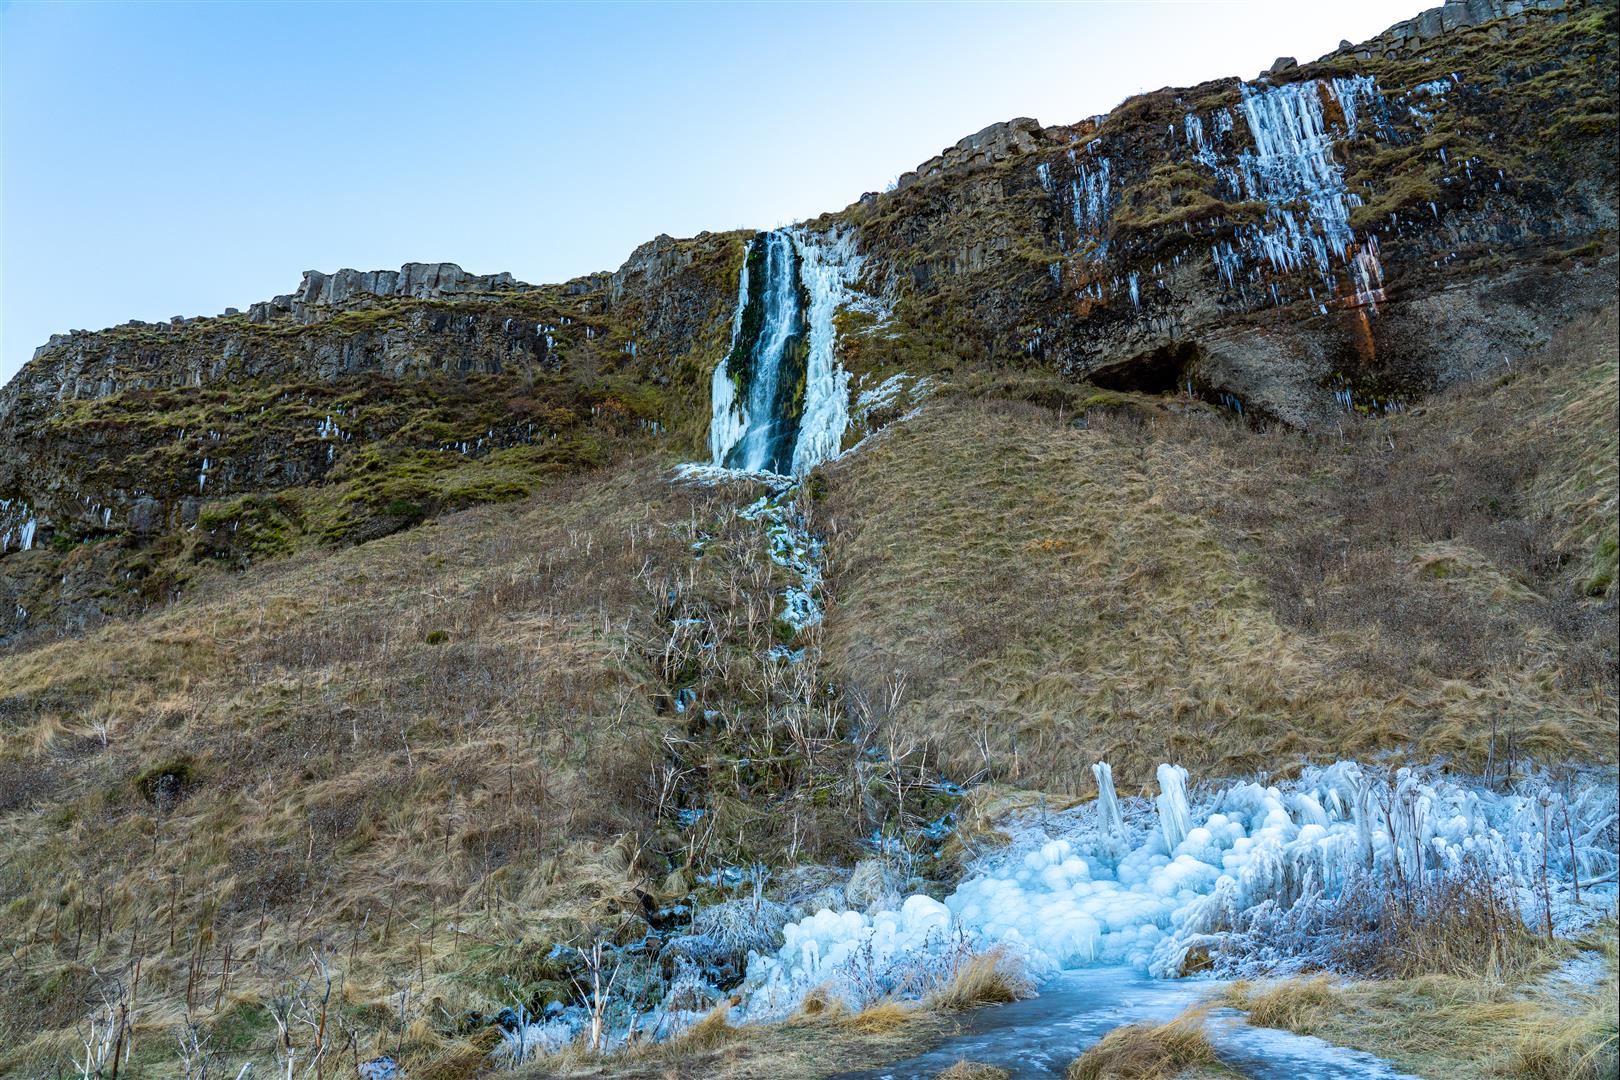 [賀禎禎冰島攝影團] 第 05 天 – 塞爾福斯-塞里雅蘭瀑布-史科嘉瀑布-迪霍拉里半島-黑沙灘